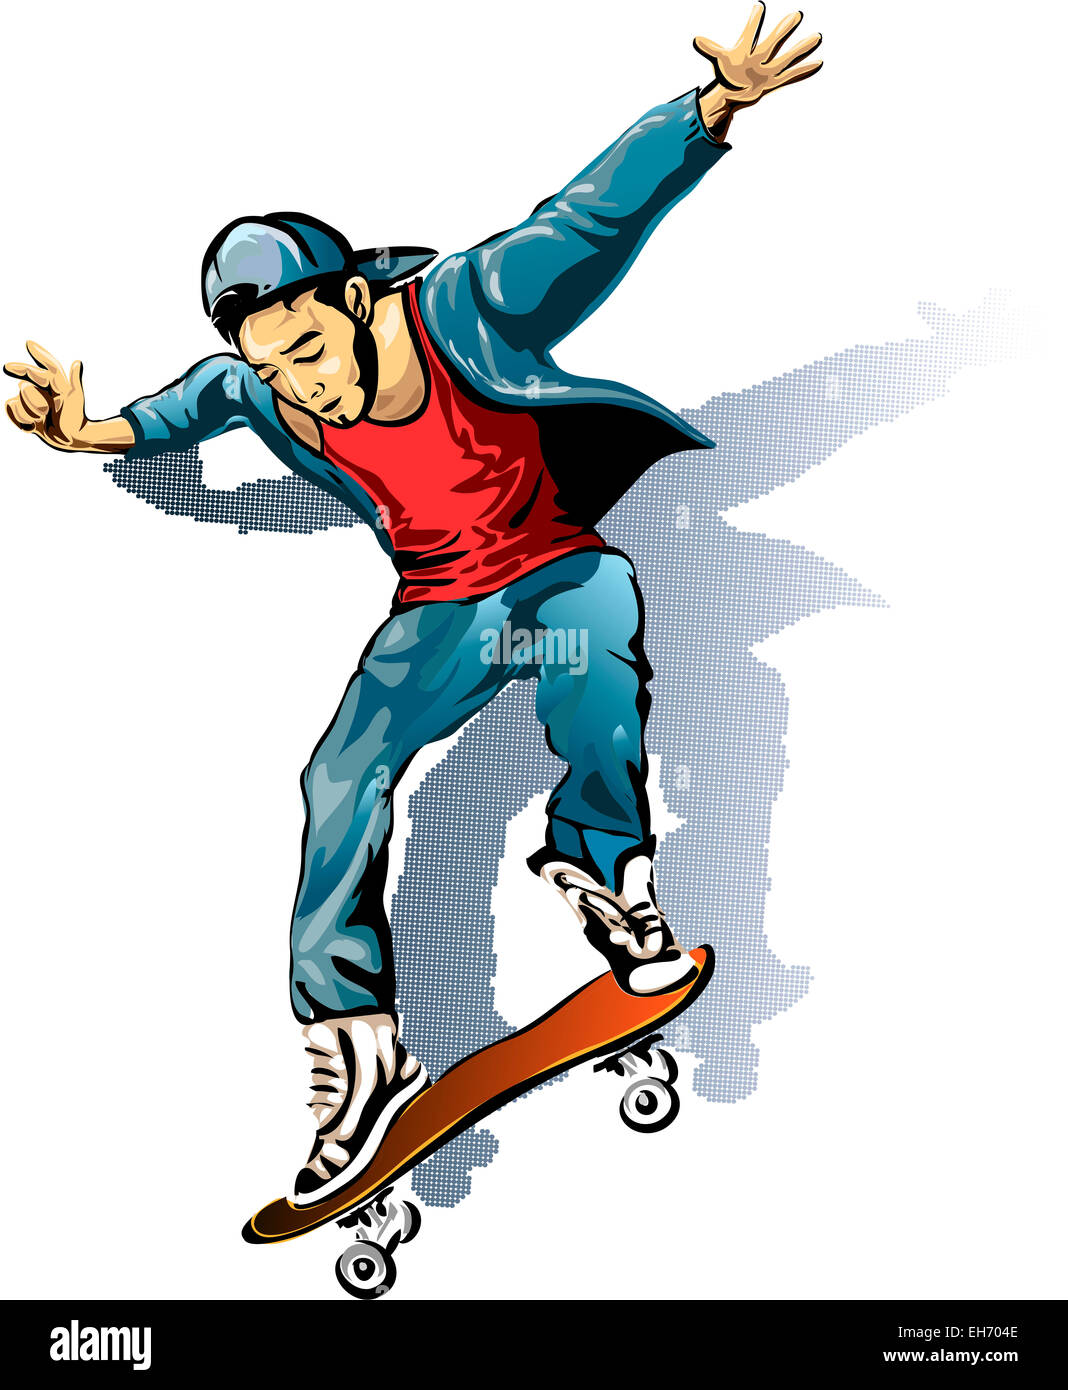 Illustration avec jeune homme sur le skateboard dessiné dans un style croquis Banque D'Images